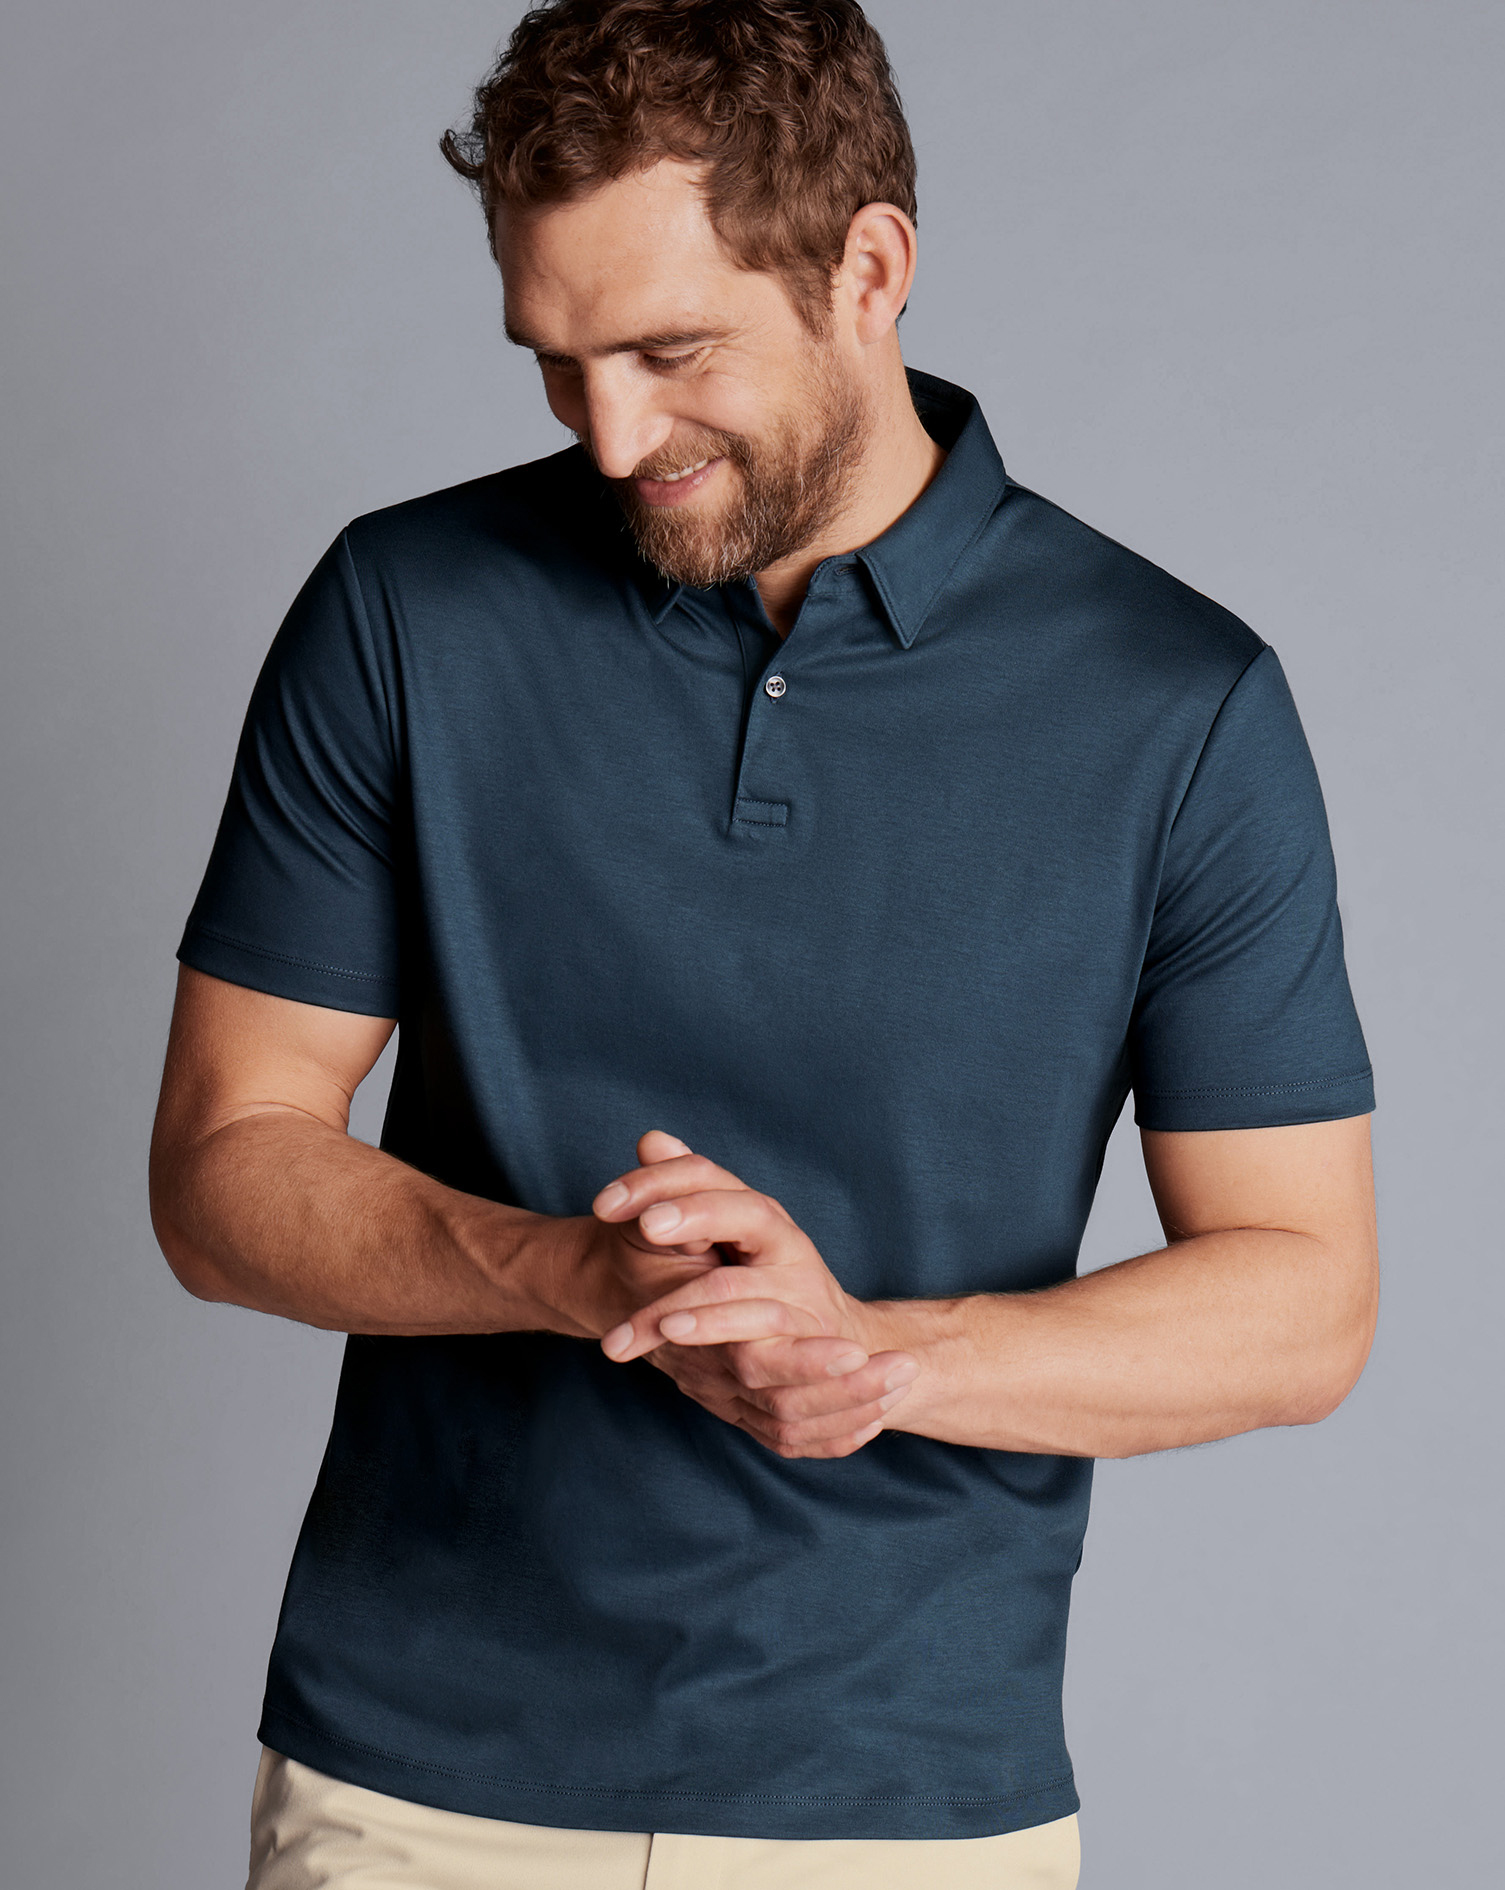 Men's Charles Tyrwhitt Smart Jersey Polo Shirt - Petrol Blue Size XXXL Cotton
